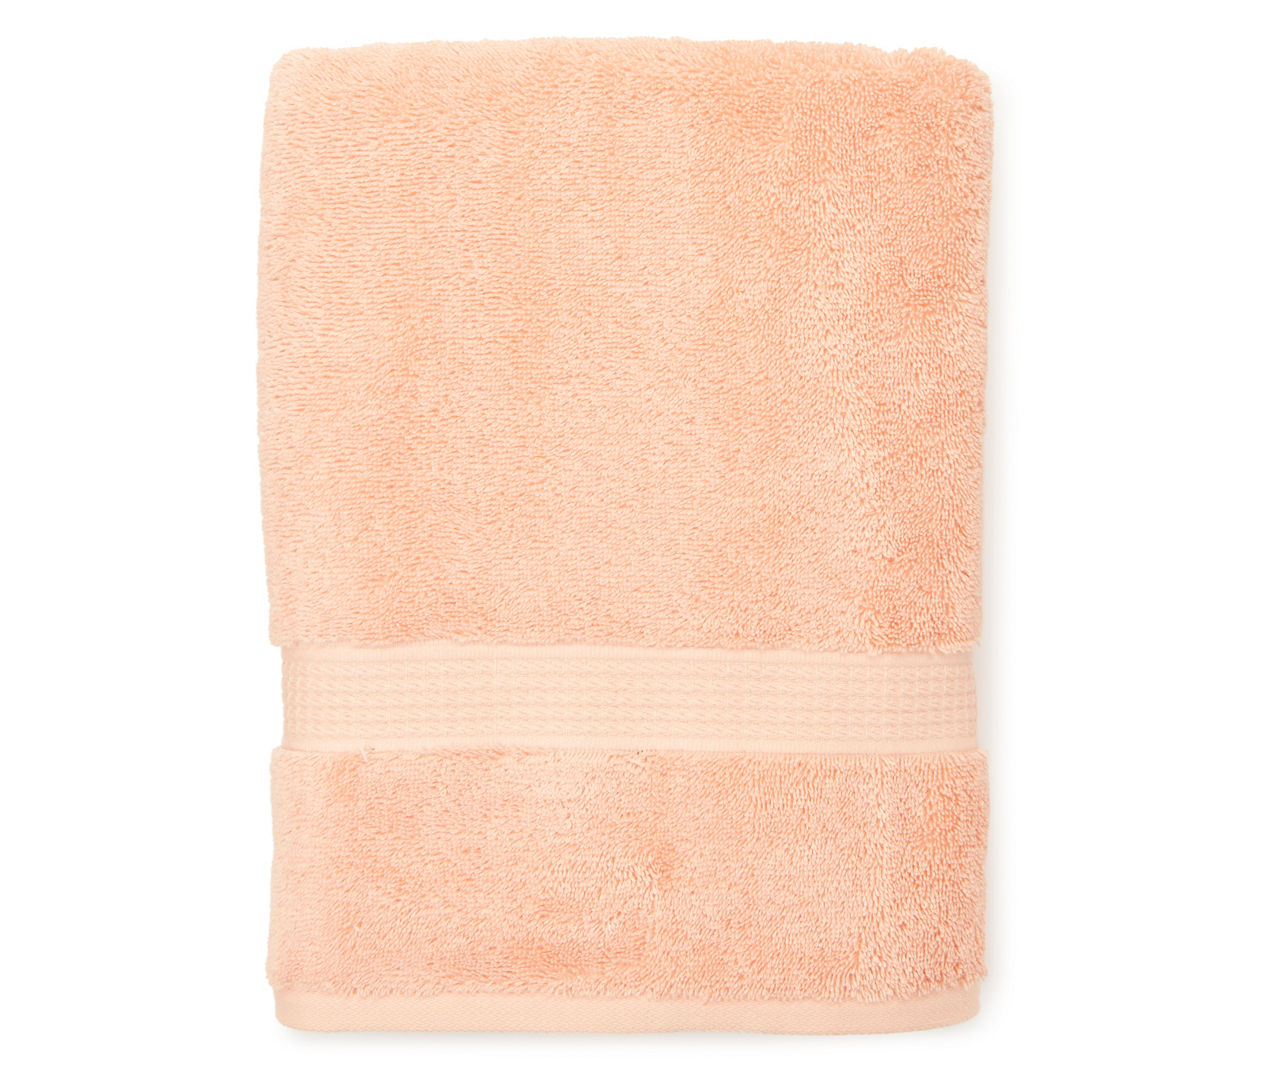 Peach Nectar Bath Towel